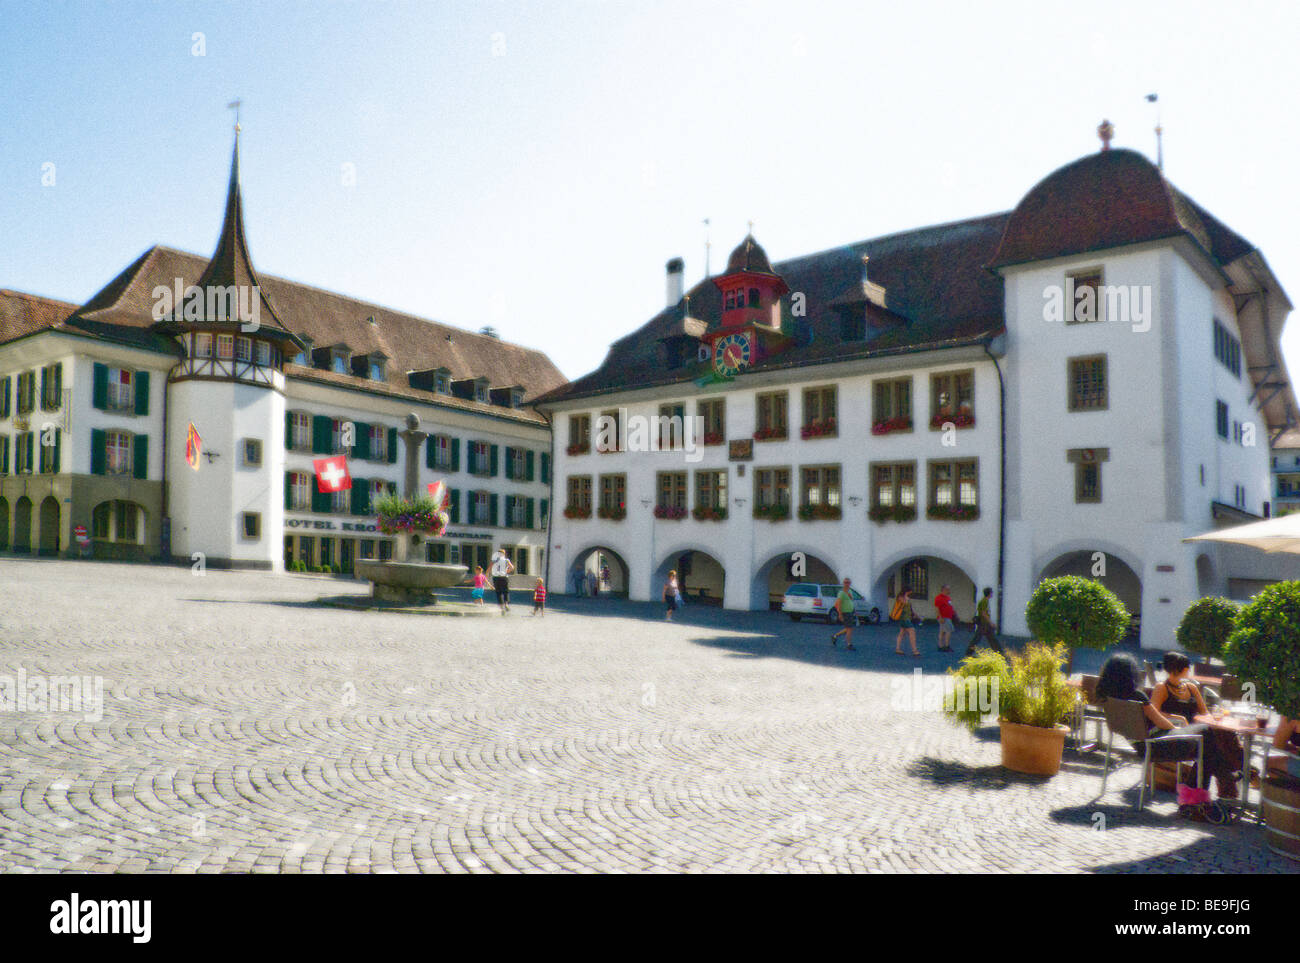 Stadt Thun Schweiz. Gebäude des alten Rathauses. Idyllische Auslegung. Stockfoto